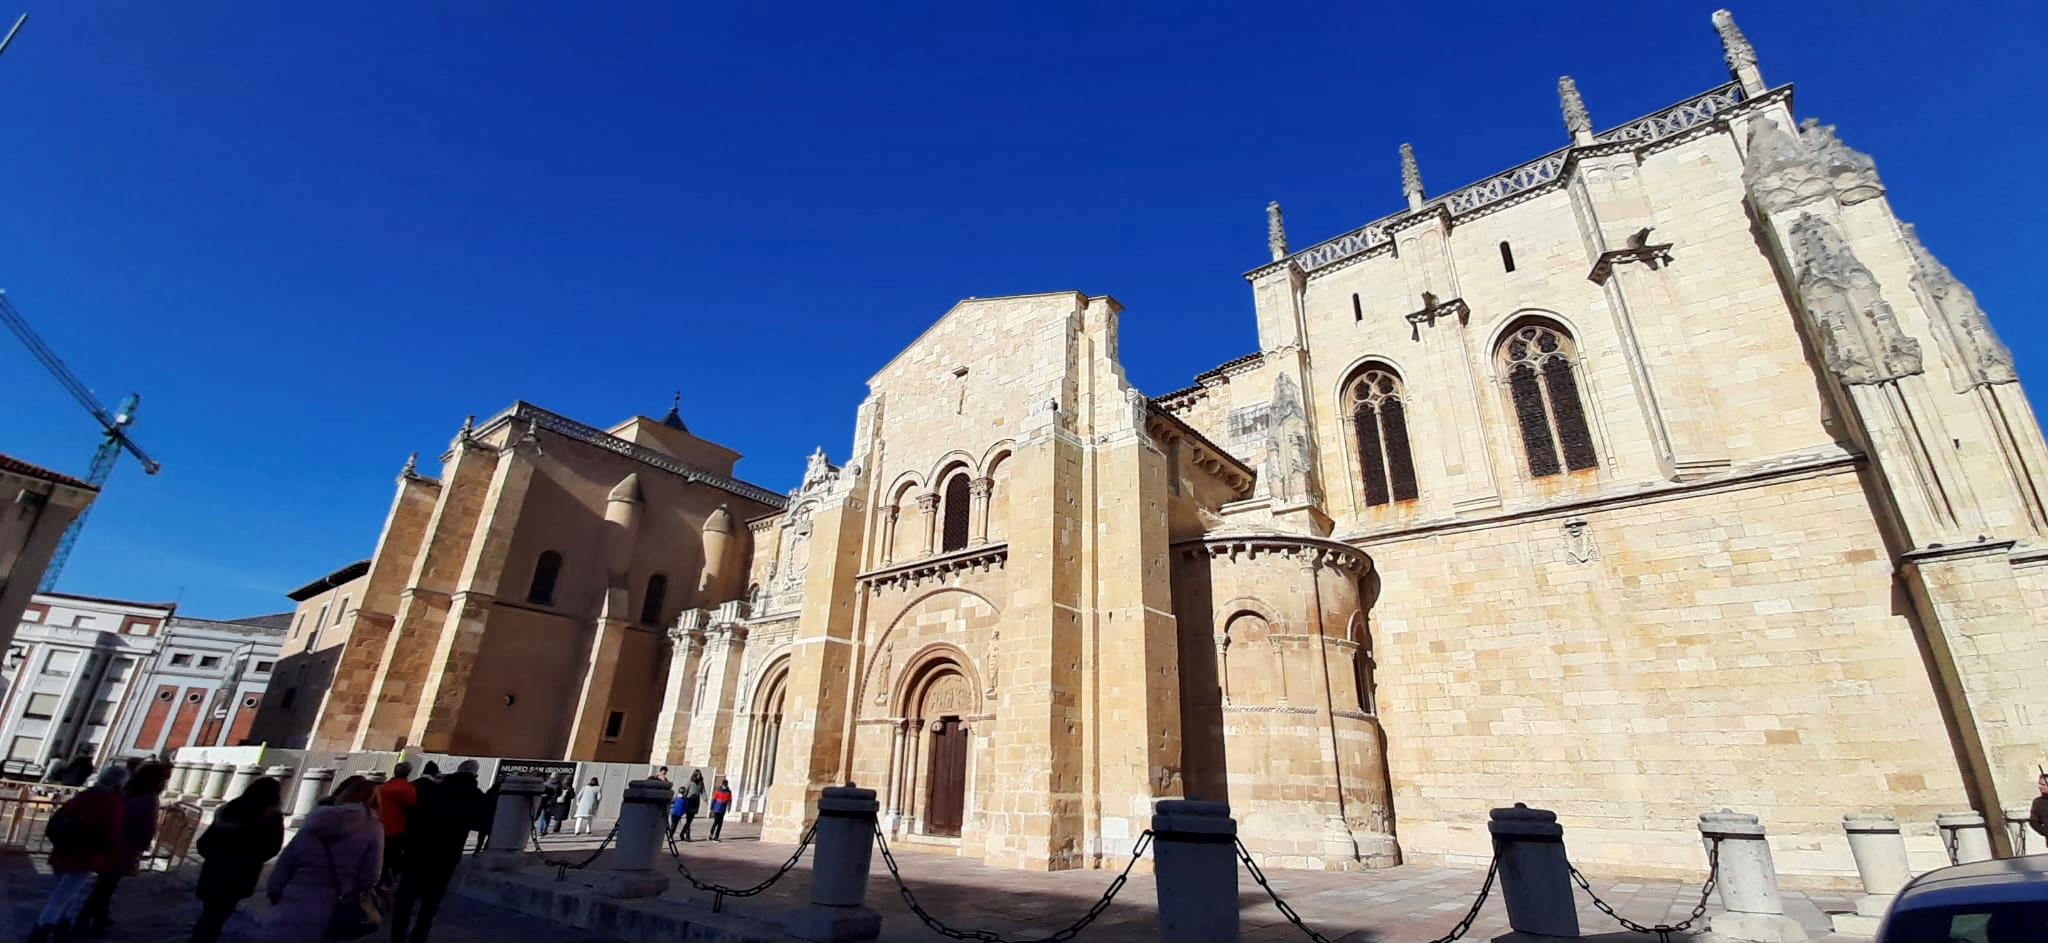 Free-Tour-Monasterio-y-Basilica-de-San-Isidoro-1